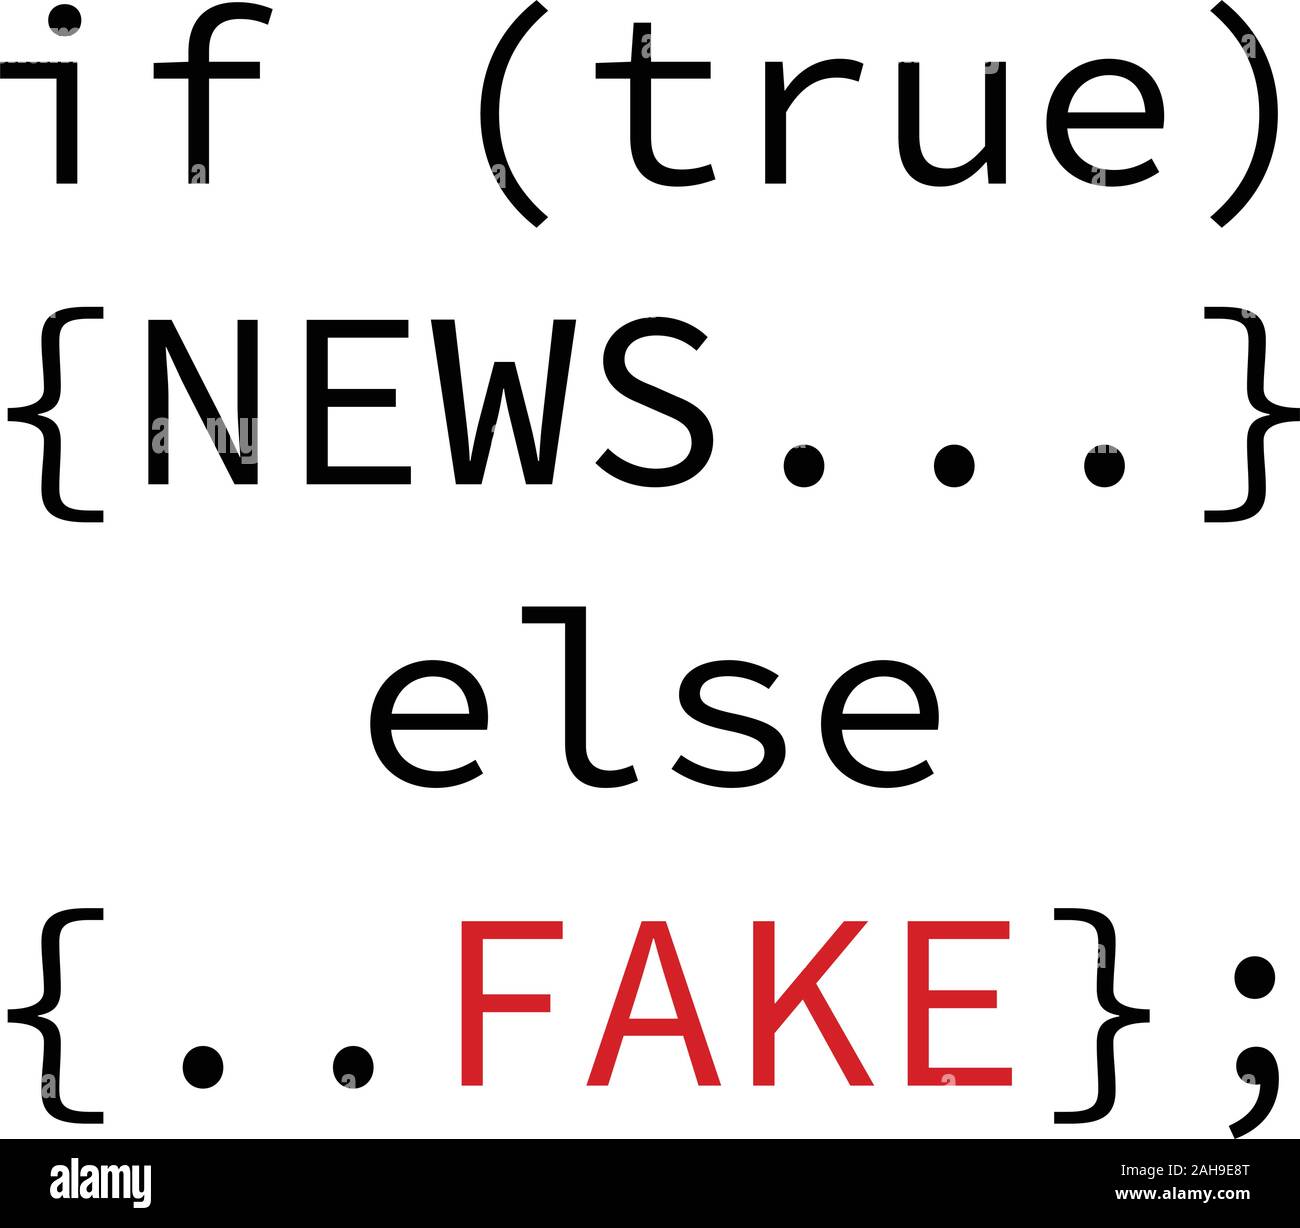 Fake news concept design. Stock Vector